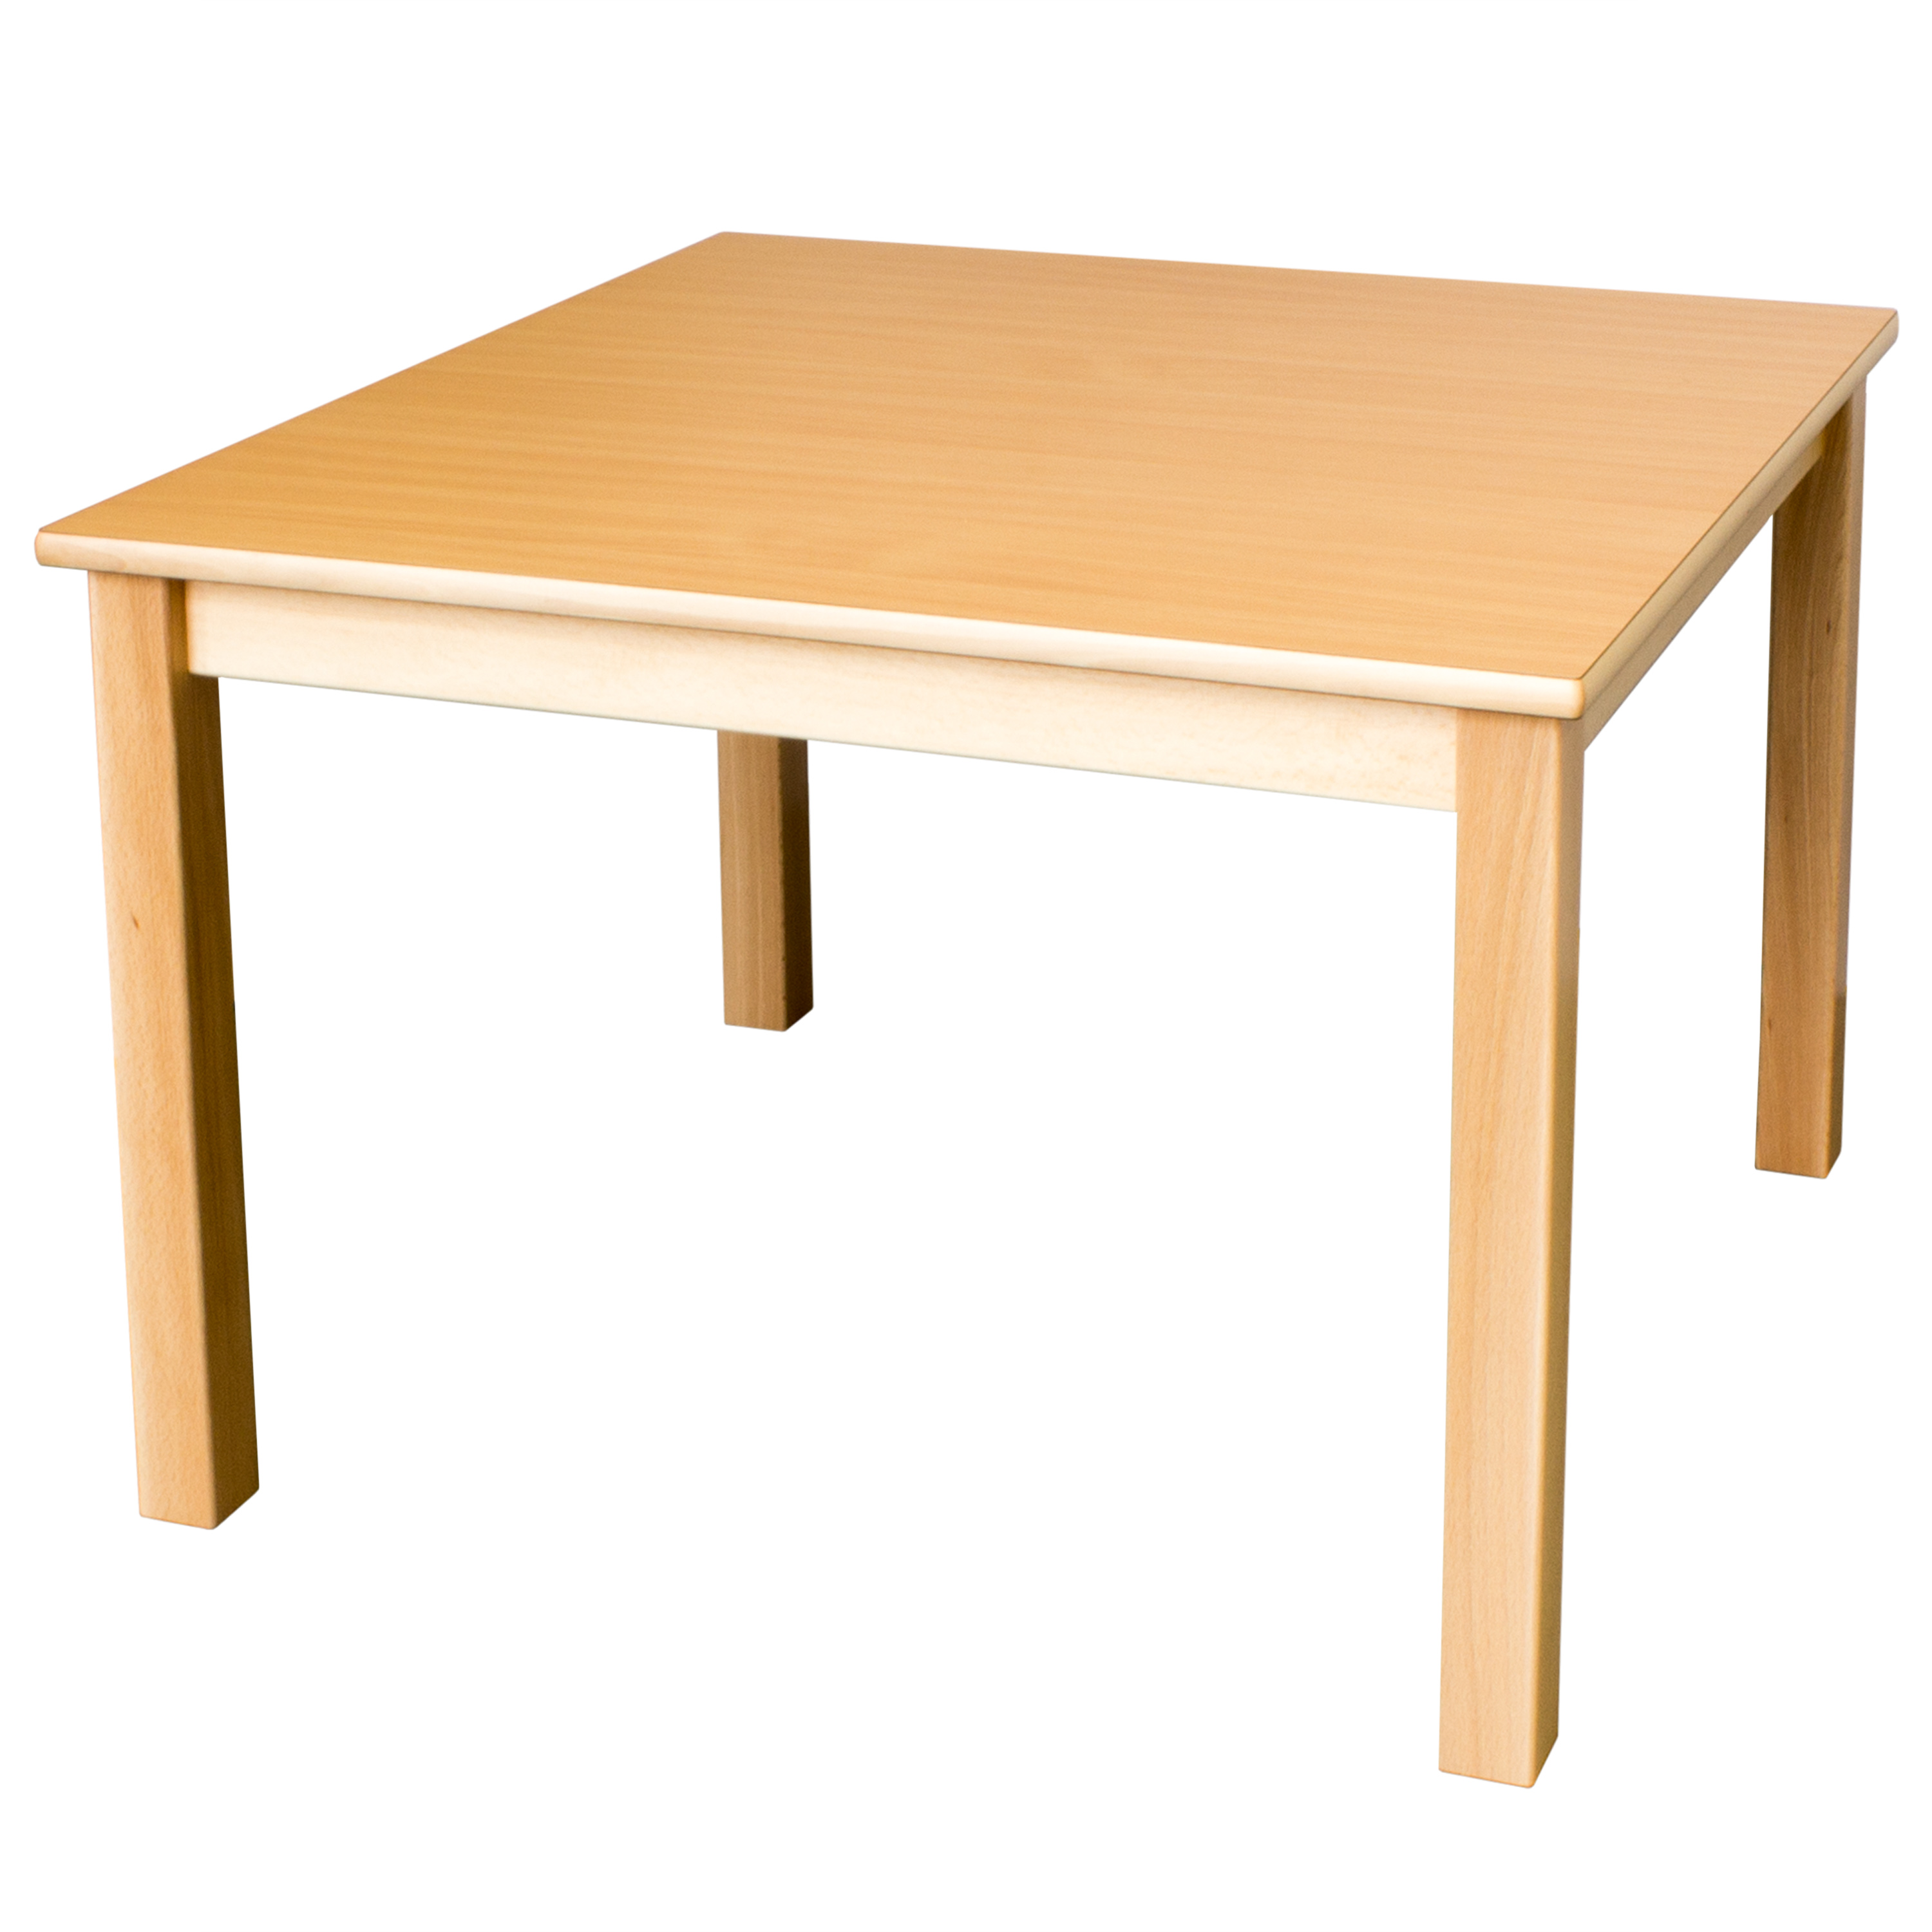 Quadrattisch in der Größe, 80 x 80 cm, Tischhöhe 58 cm